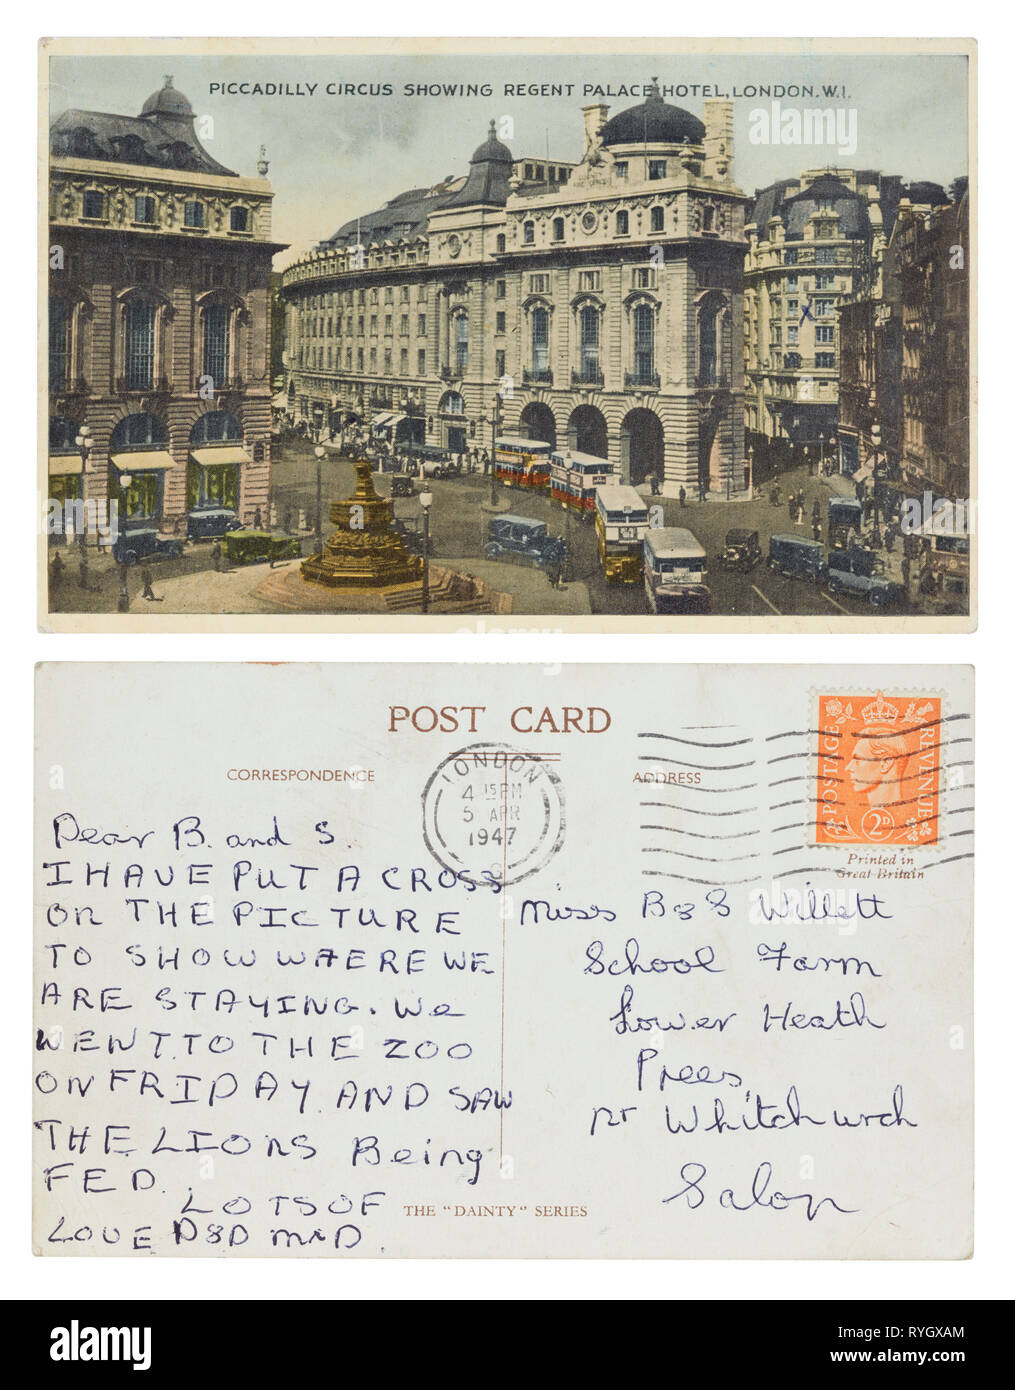 Carte postale de Piccadilly Circus, Londres en 1947, envoyé à près de Whitchurch, directions. Banque D'Images